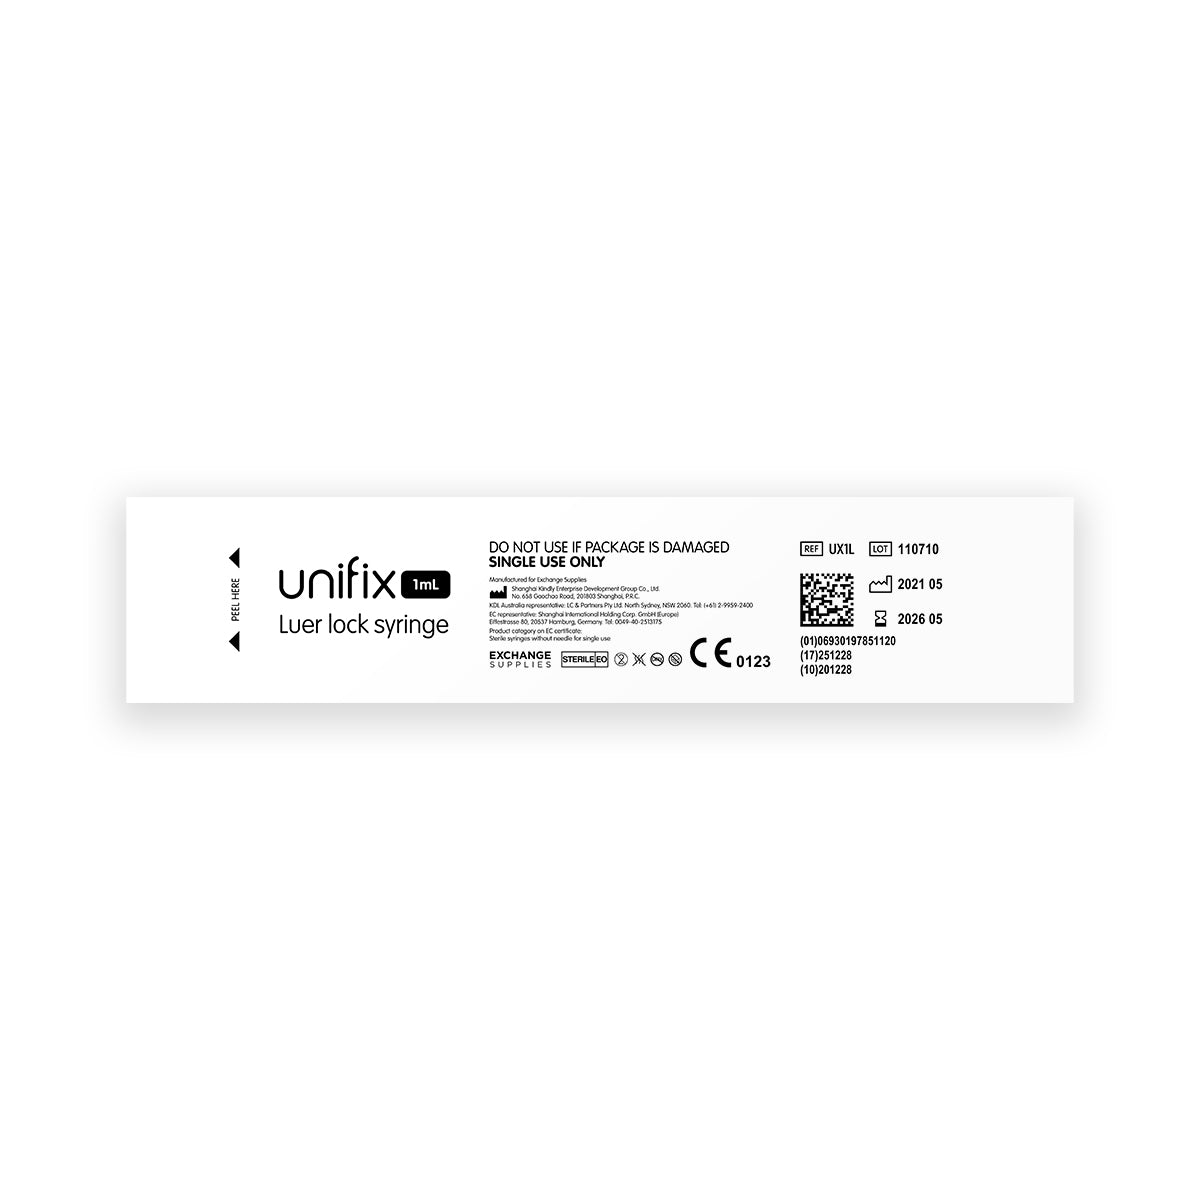 Unifix 1ml Luer Lock Syringe x100